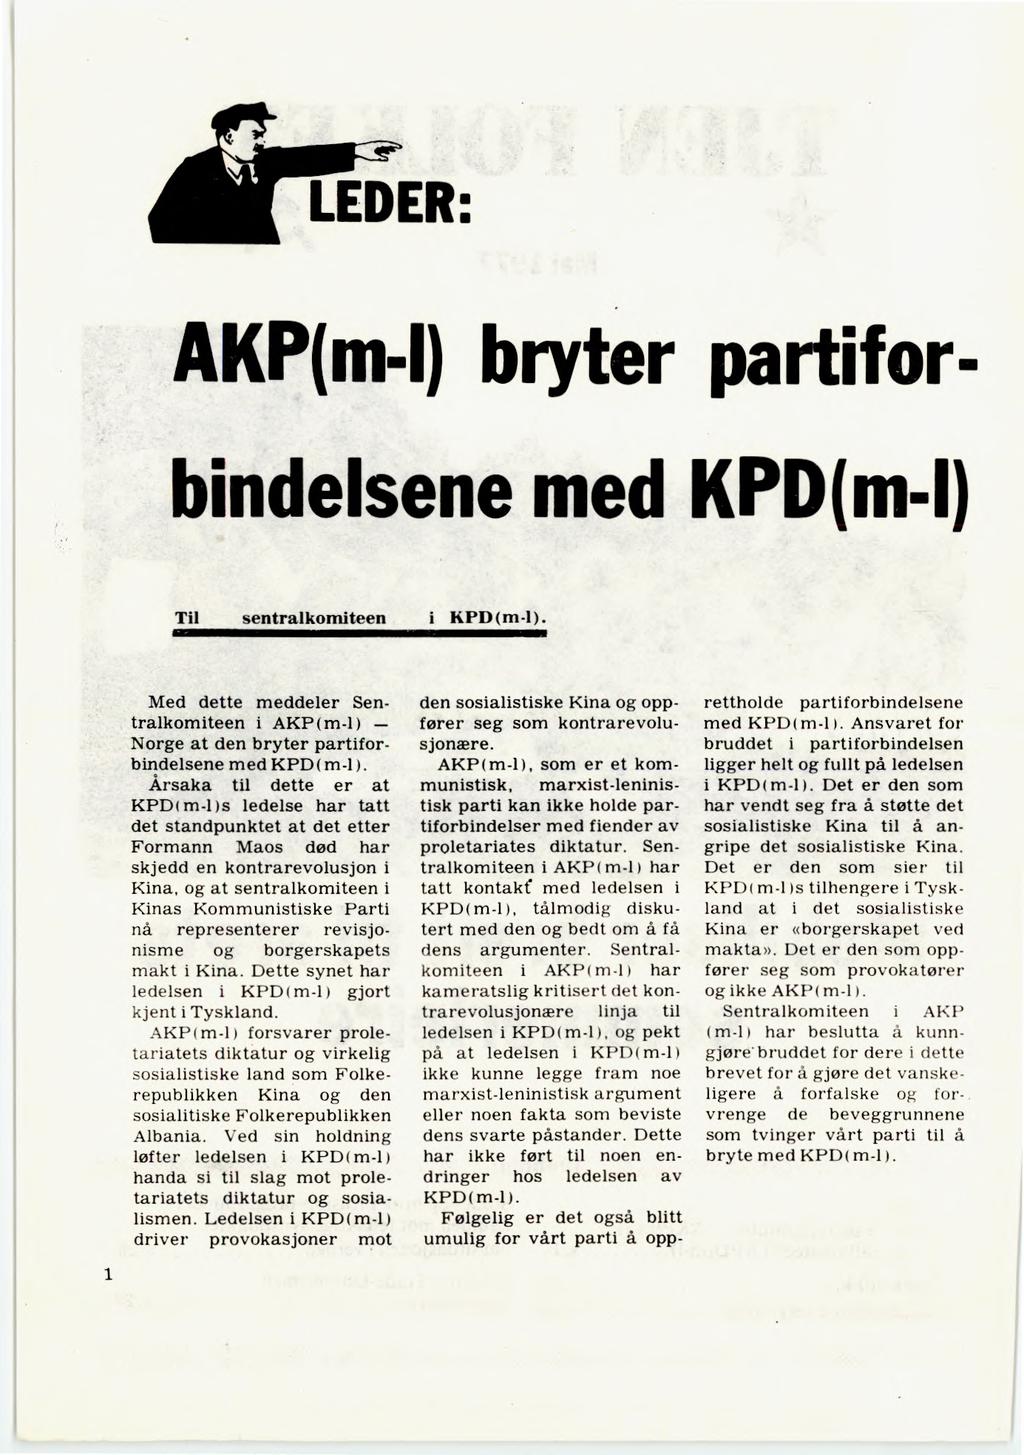 AKP(m-I) bryter partifor- bindelsene med KPD(m-I Til sentralkomiteen "011111, i KPD(m-1). A Med dette meddeler Sentralkomiteen i AKP ( m-1) Norge at den bryter partiforbindelsene med KPD( m-1).